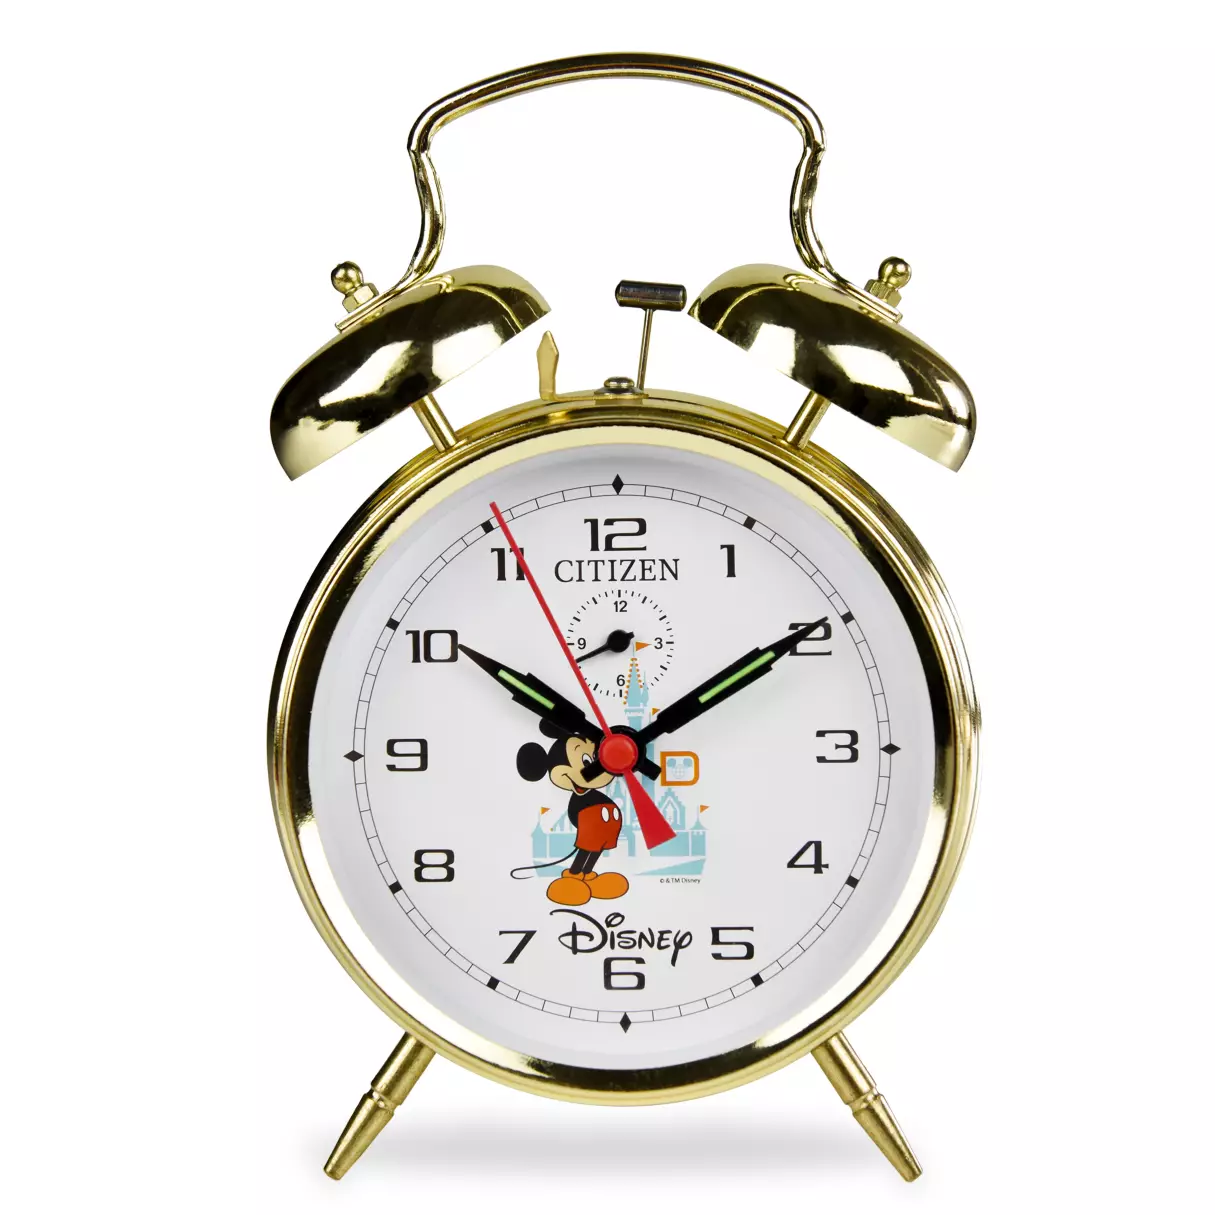 Citizen Alarm Clock